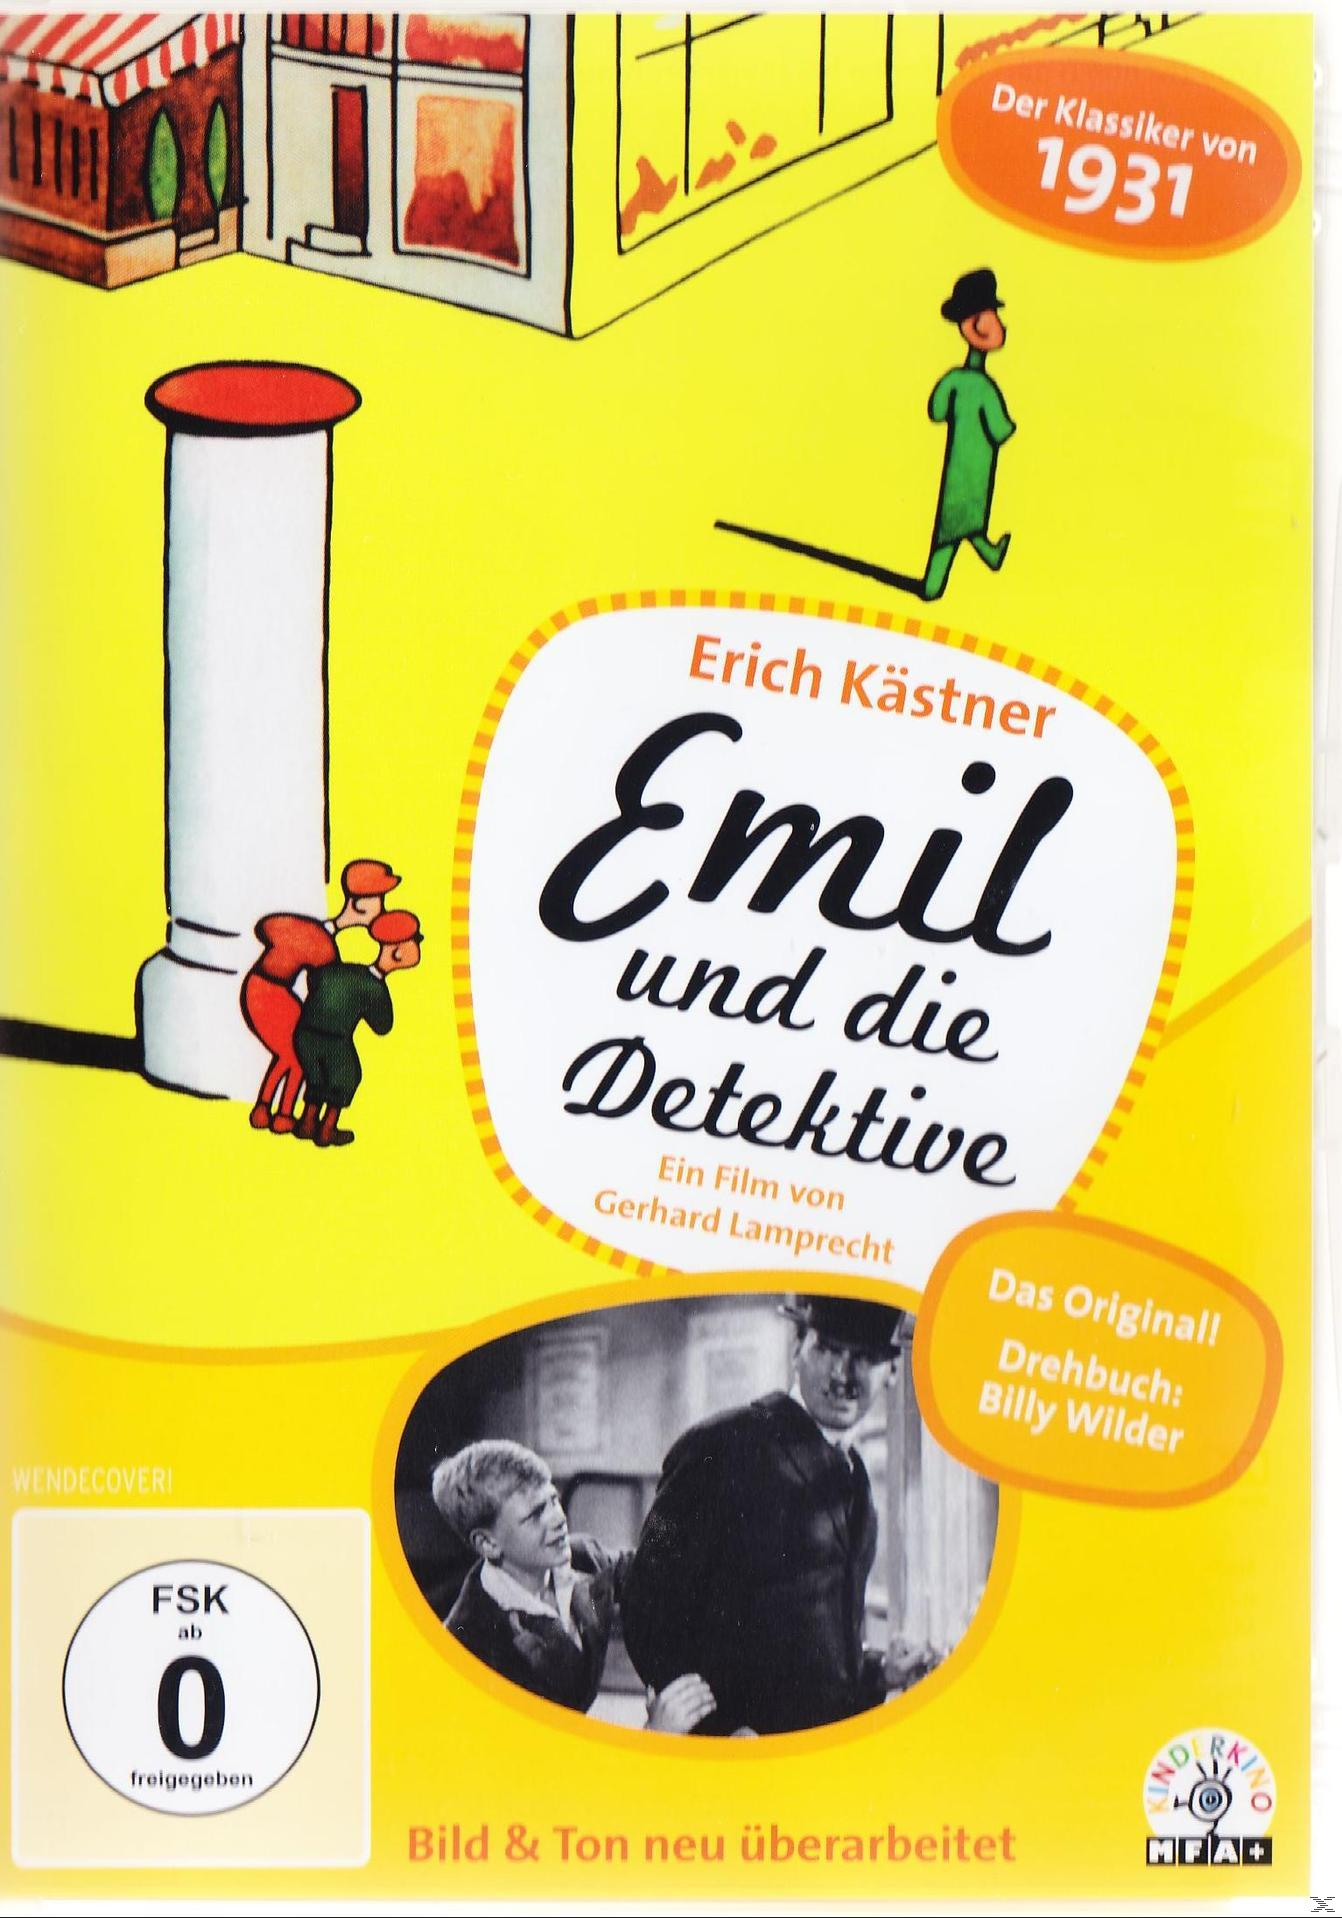 Emil Detektive und DVD die